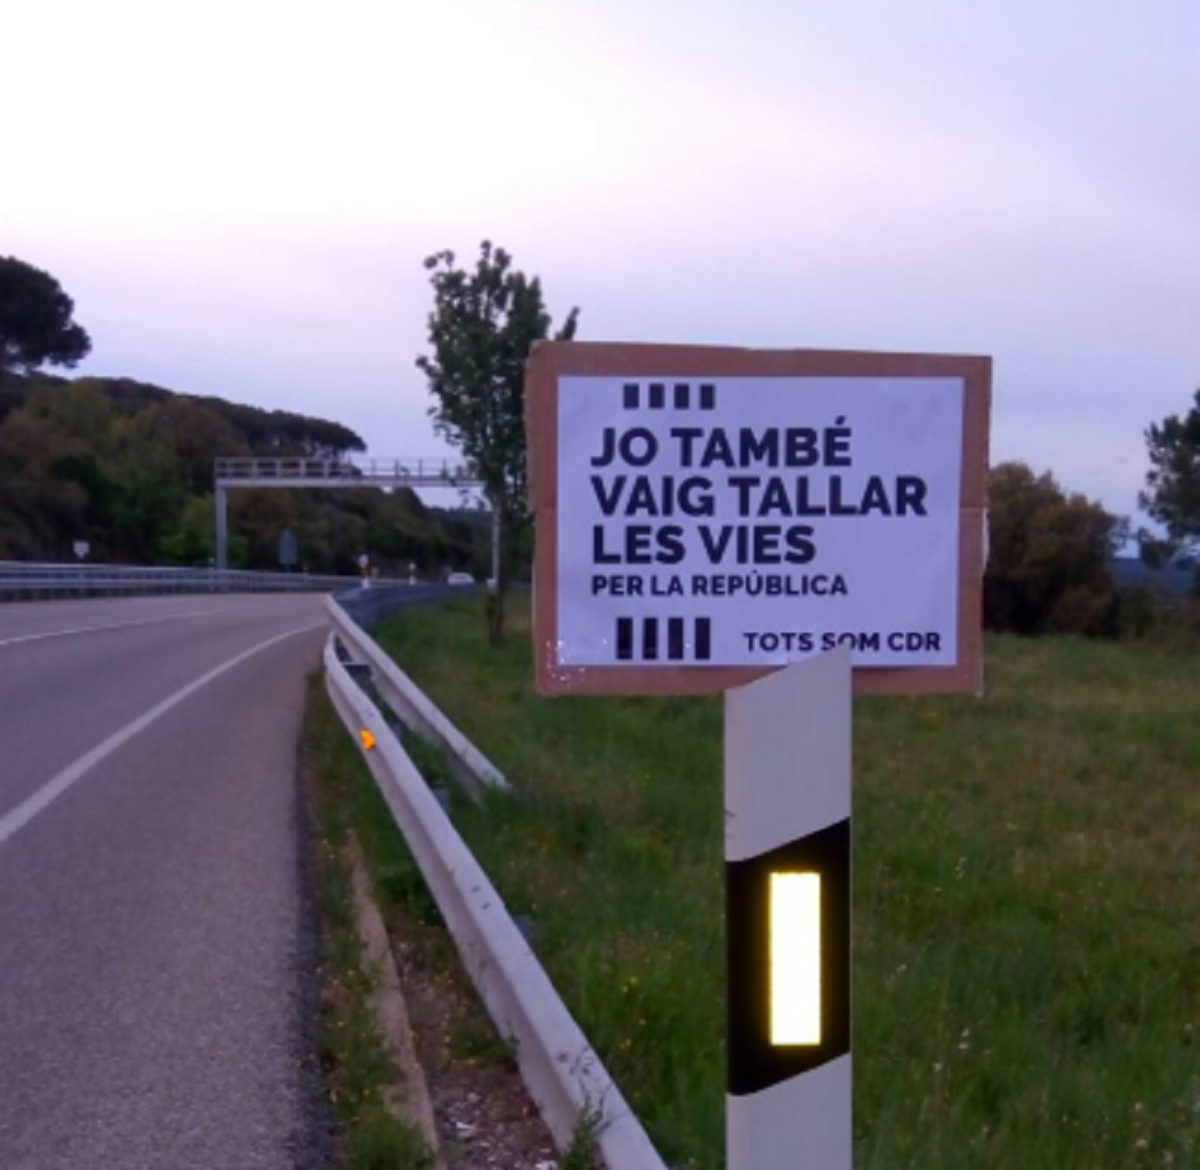 "La carretera de la República": els CDR pengen cartells a l'N-II a Girona